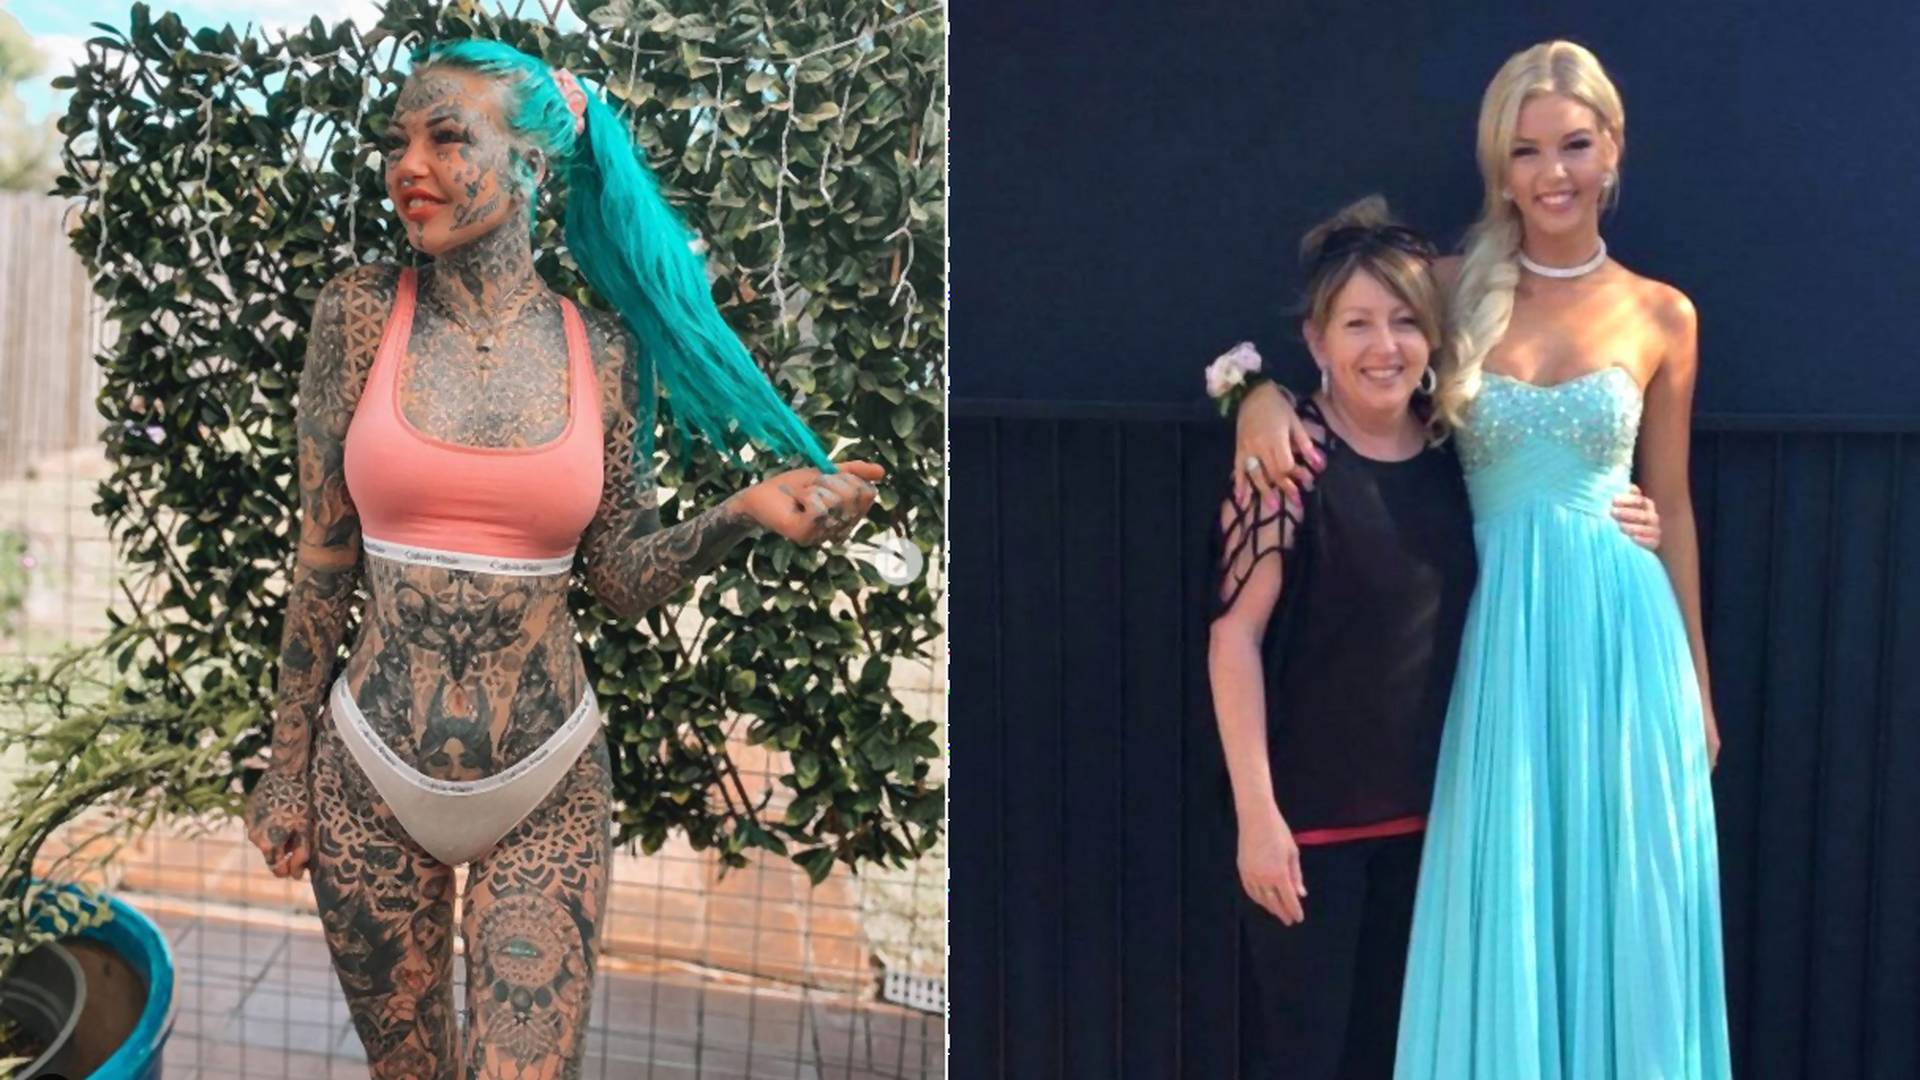 Döbbenetes átalakulás: így nézett ki korábban a tetoválás függő influencer